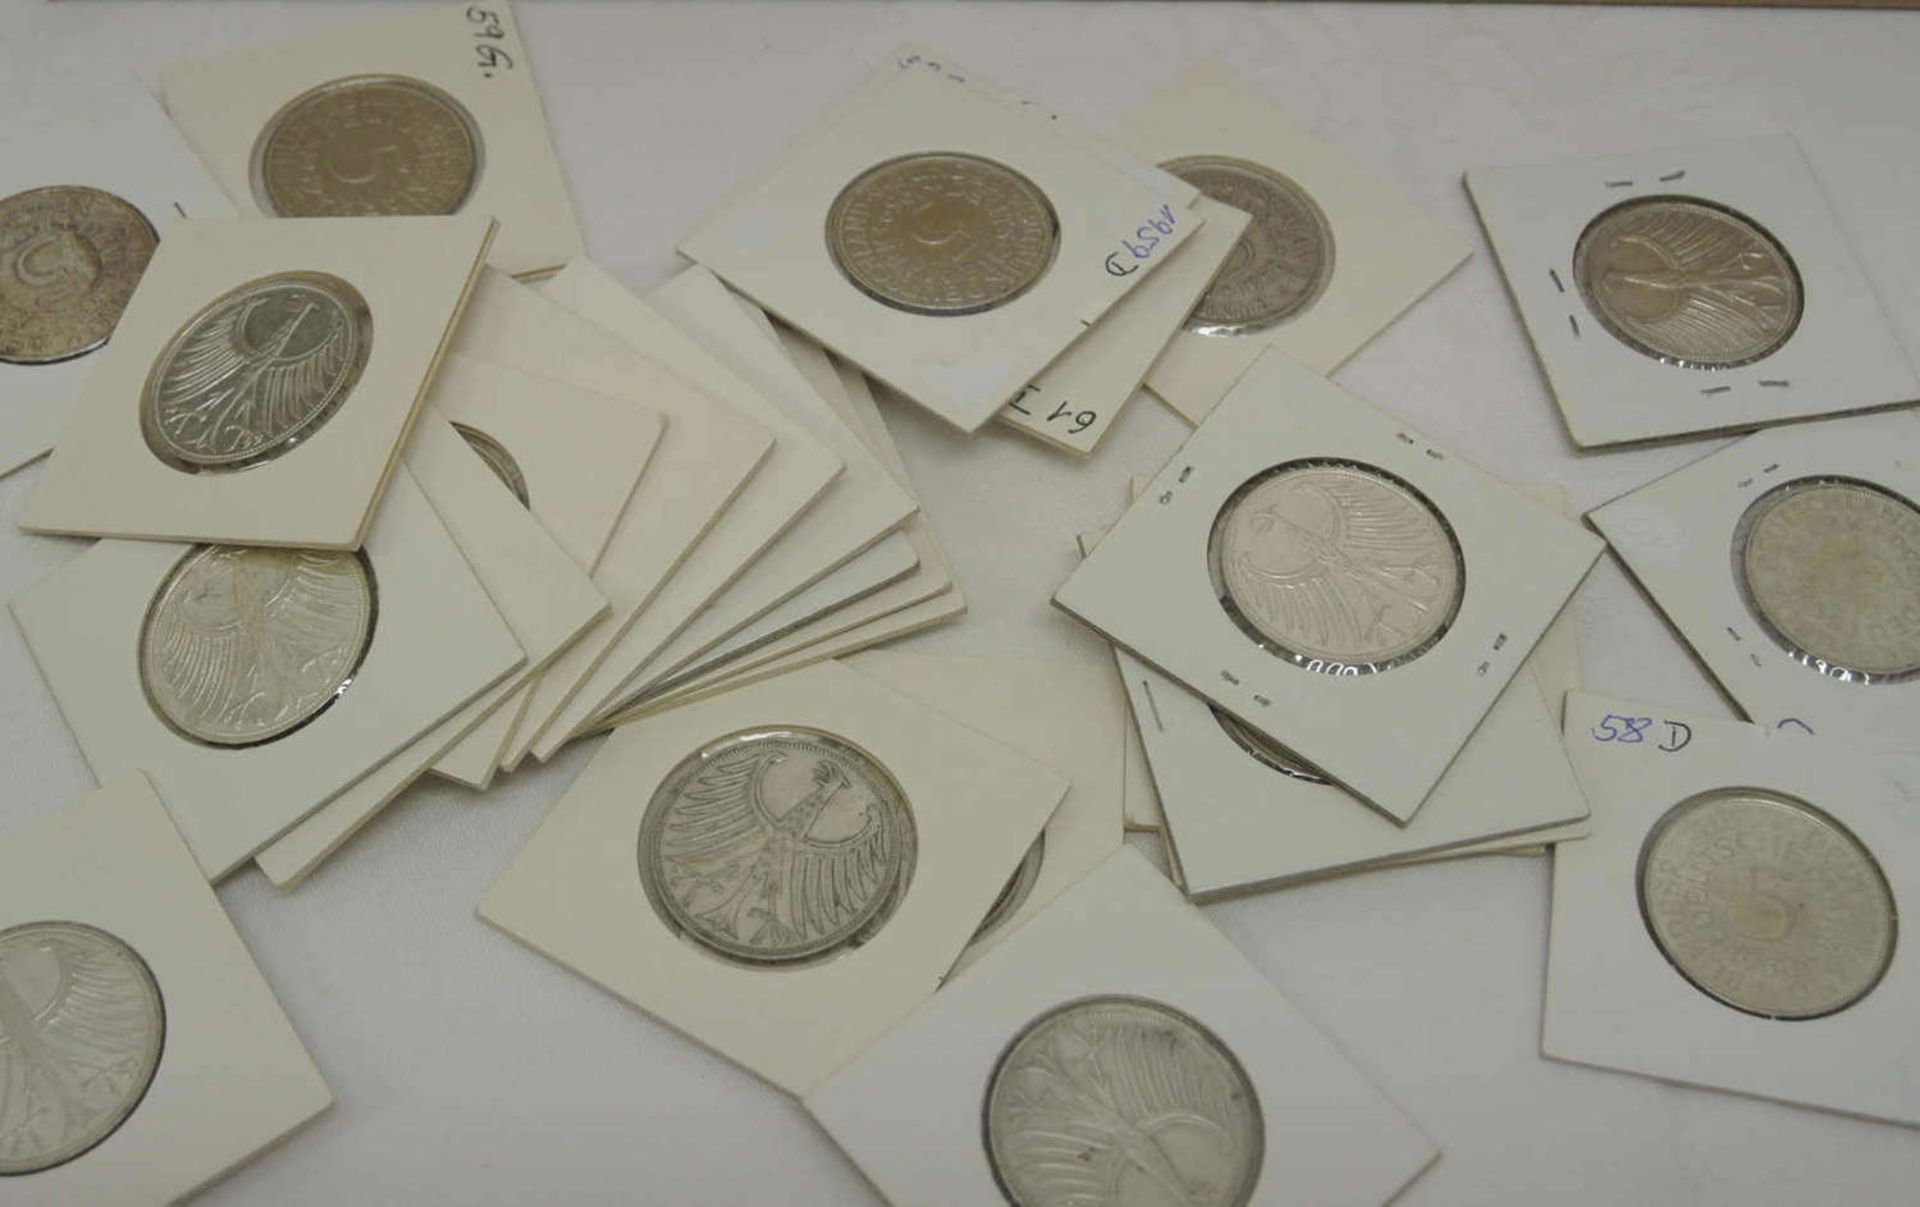 Silberadler - Sammlung, 5 DM Stücke, bestehend aus 72x 5 DM Silber, 1951-1974, komplett ohne 1958 j, - Bild 2 aus 2